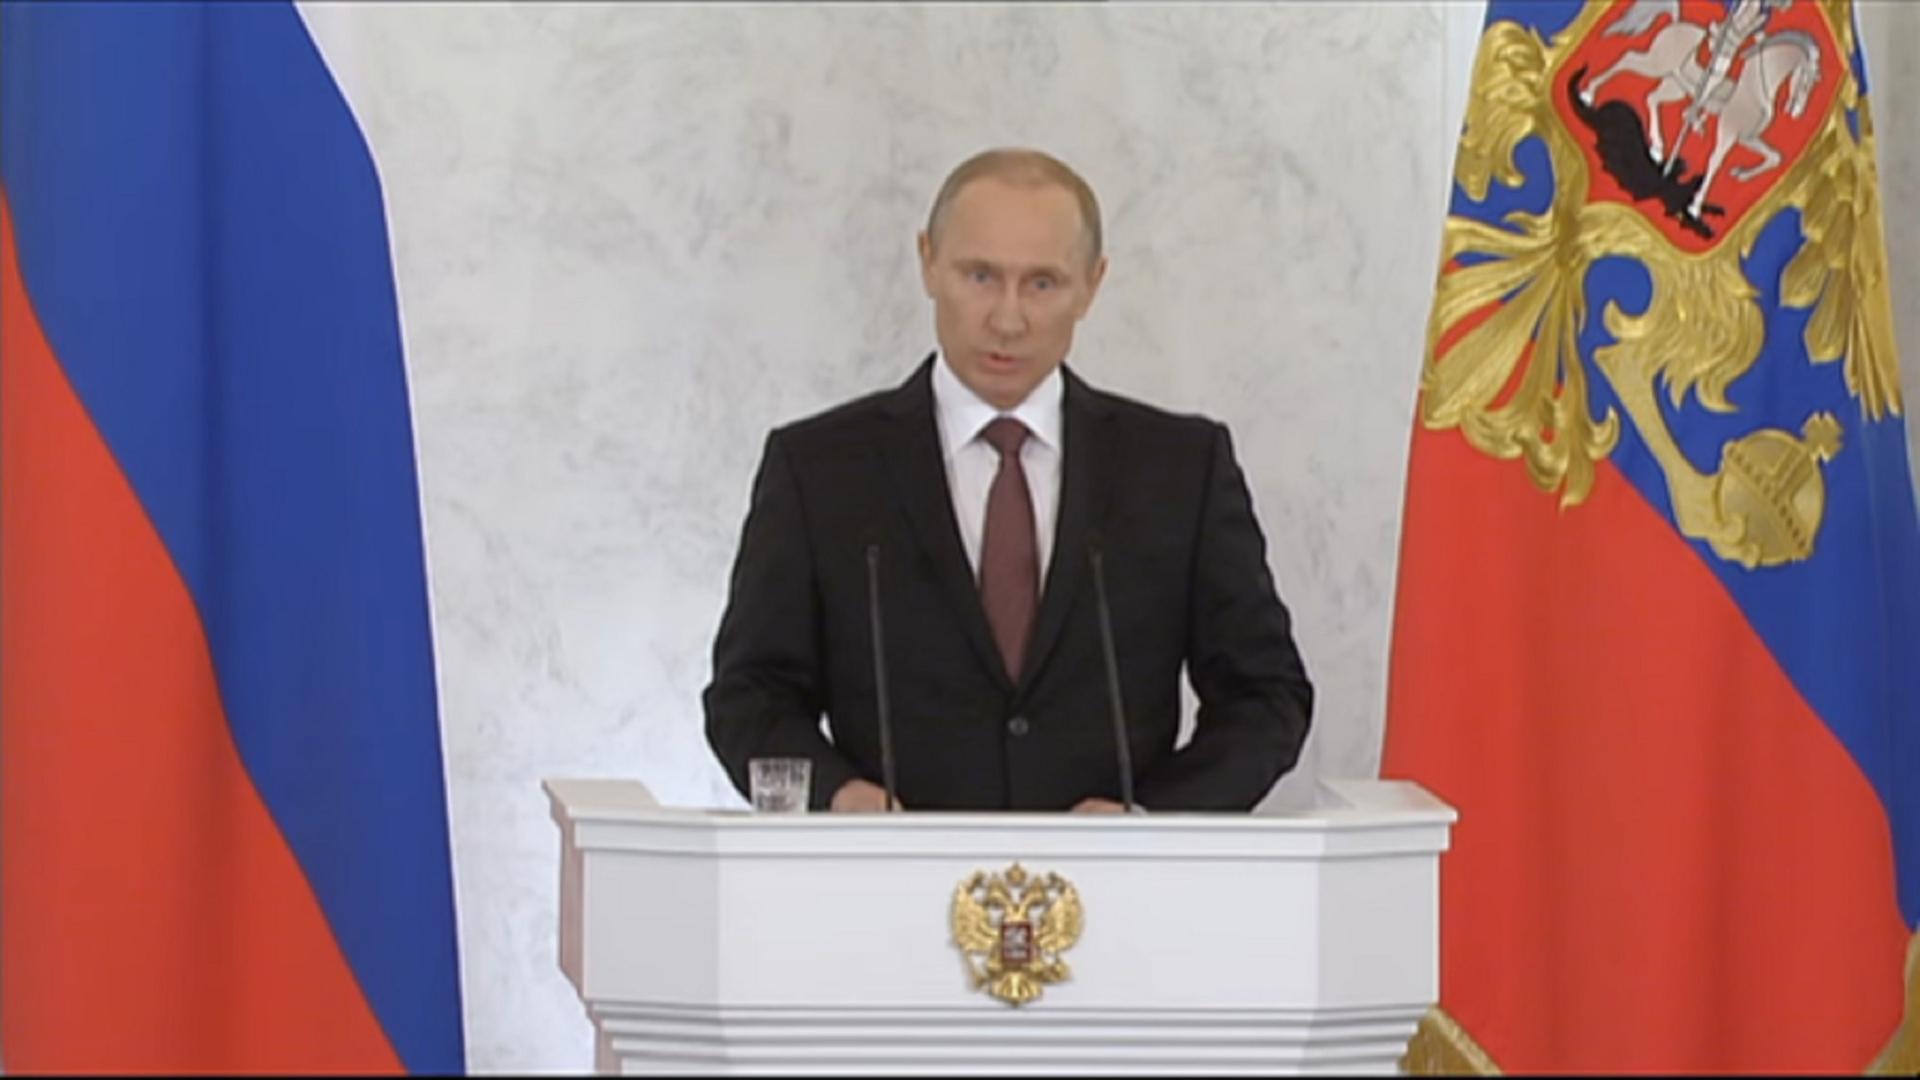 18.03.14: Putin über den Vertrag mit der Krim